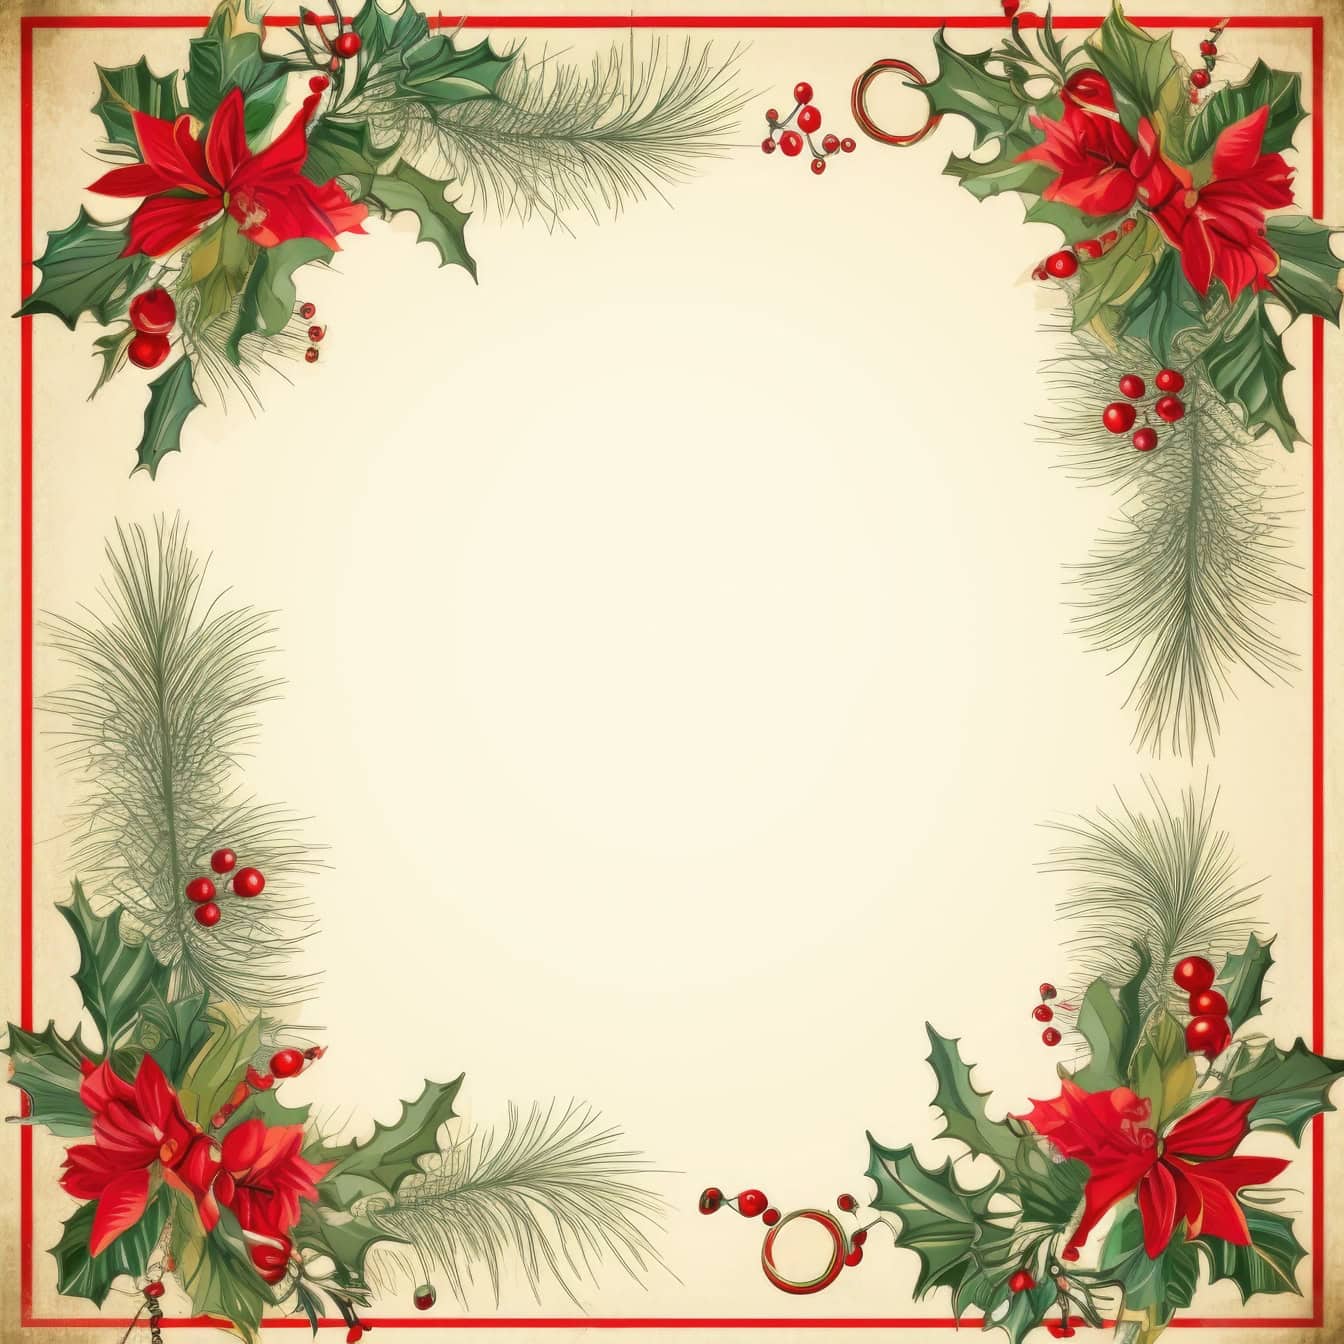 Ornamental jul og nytår lykønskningskort skabelon i retro stil med firkantet ramme med røde bær og grønne blade